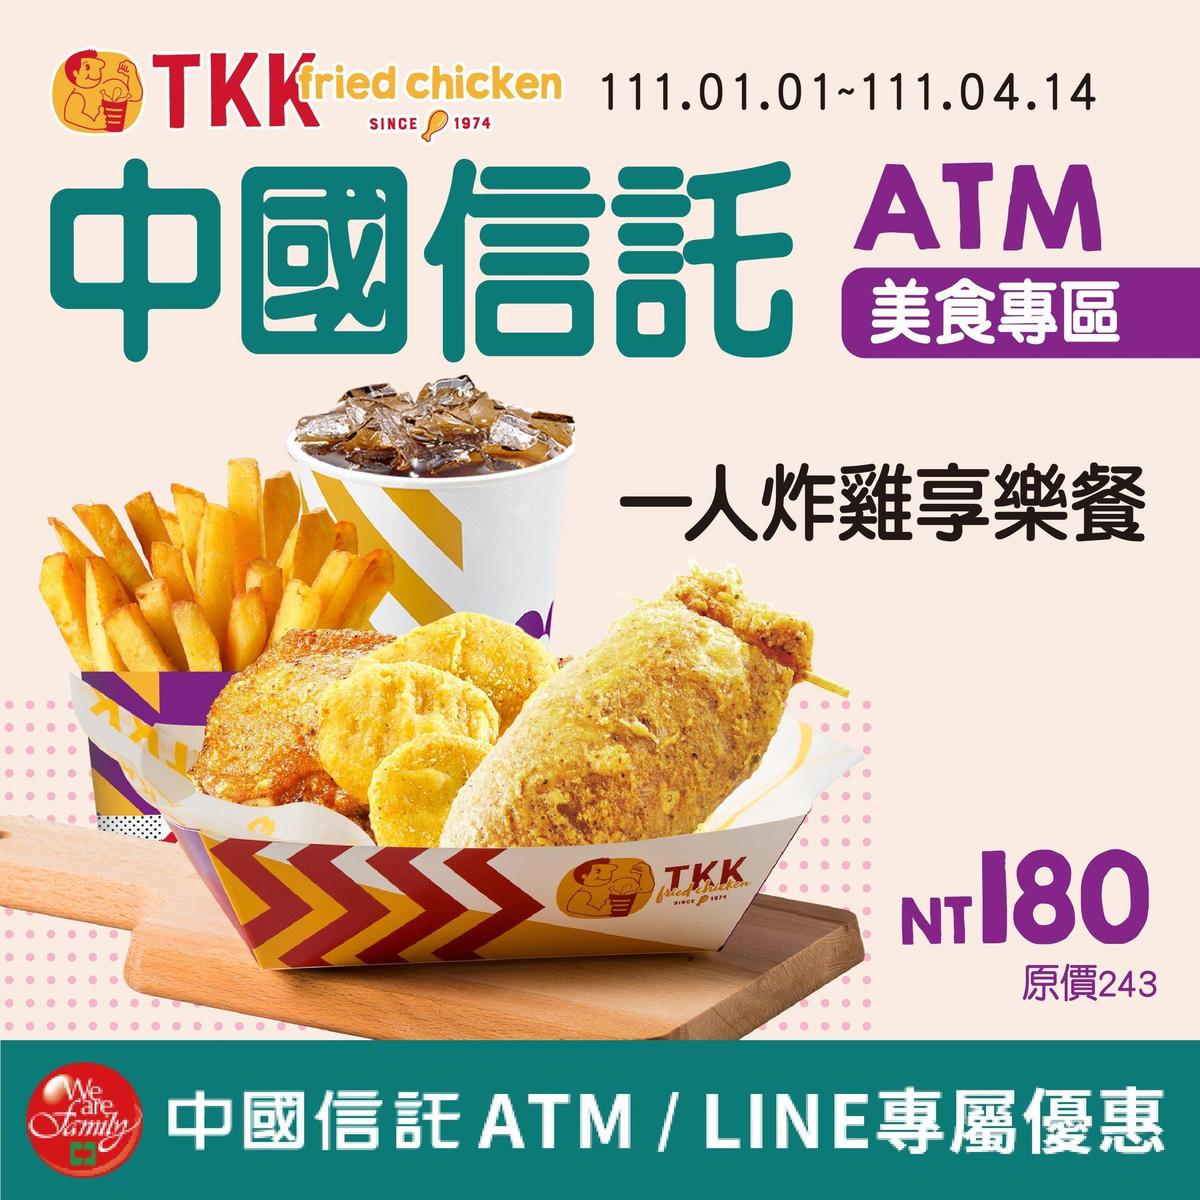  頂呱呱與中國信託合作，即日起至3月31日，到中國信託ATM領錢後選擇列印酷碰券可享套餐優惠。（翻攝自頂呱呱臉書）